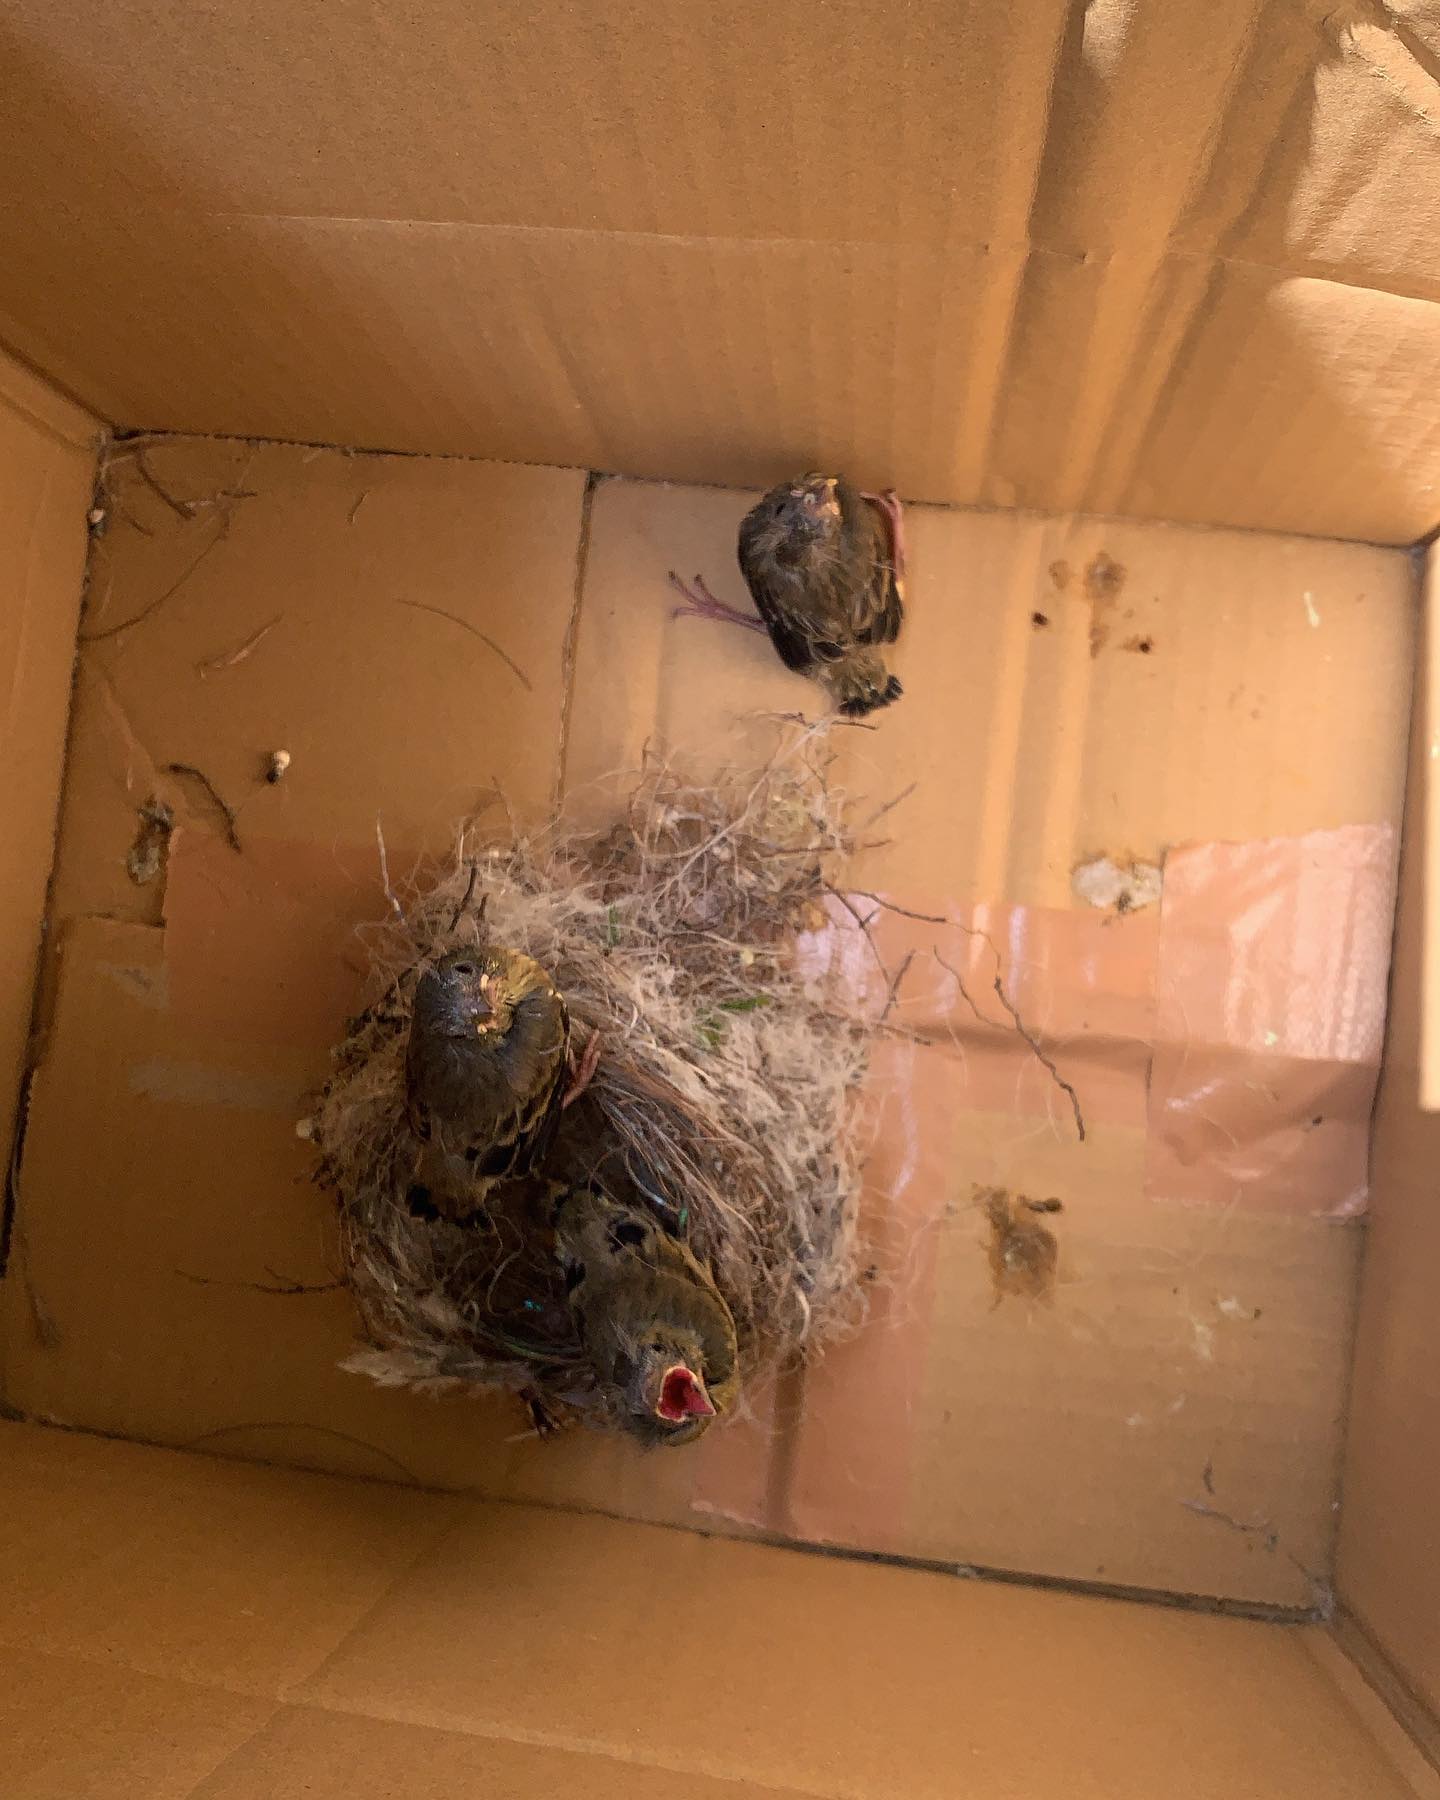 我が家のベランダ鉢植えクレストの鳥の巣巣から飛び降りた雛たち回収して段ボール箱に親鳥は緊急事態発生　うろうろと鳴きながら飛びまわって雛を呼んでる。とりあえず段ボール箱に巣を入れてみました。#鳥の巣　#野鳥　#バードウオッチング　#癒しの時間　#楽しい